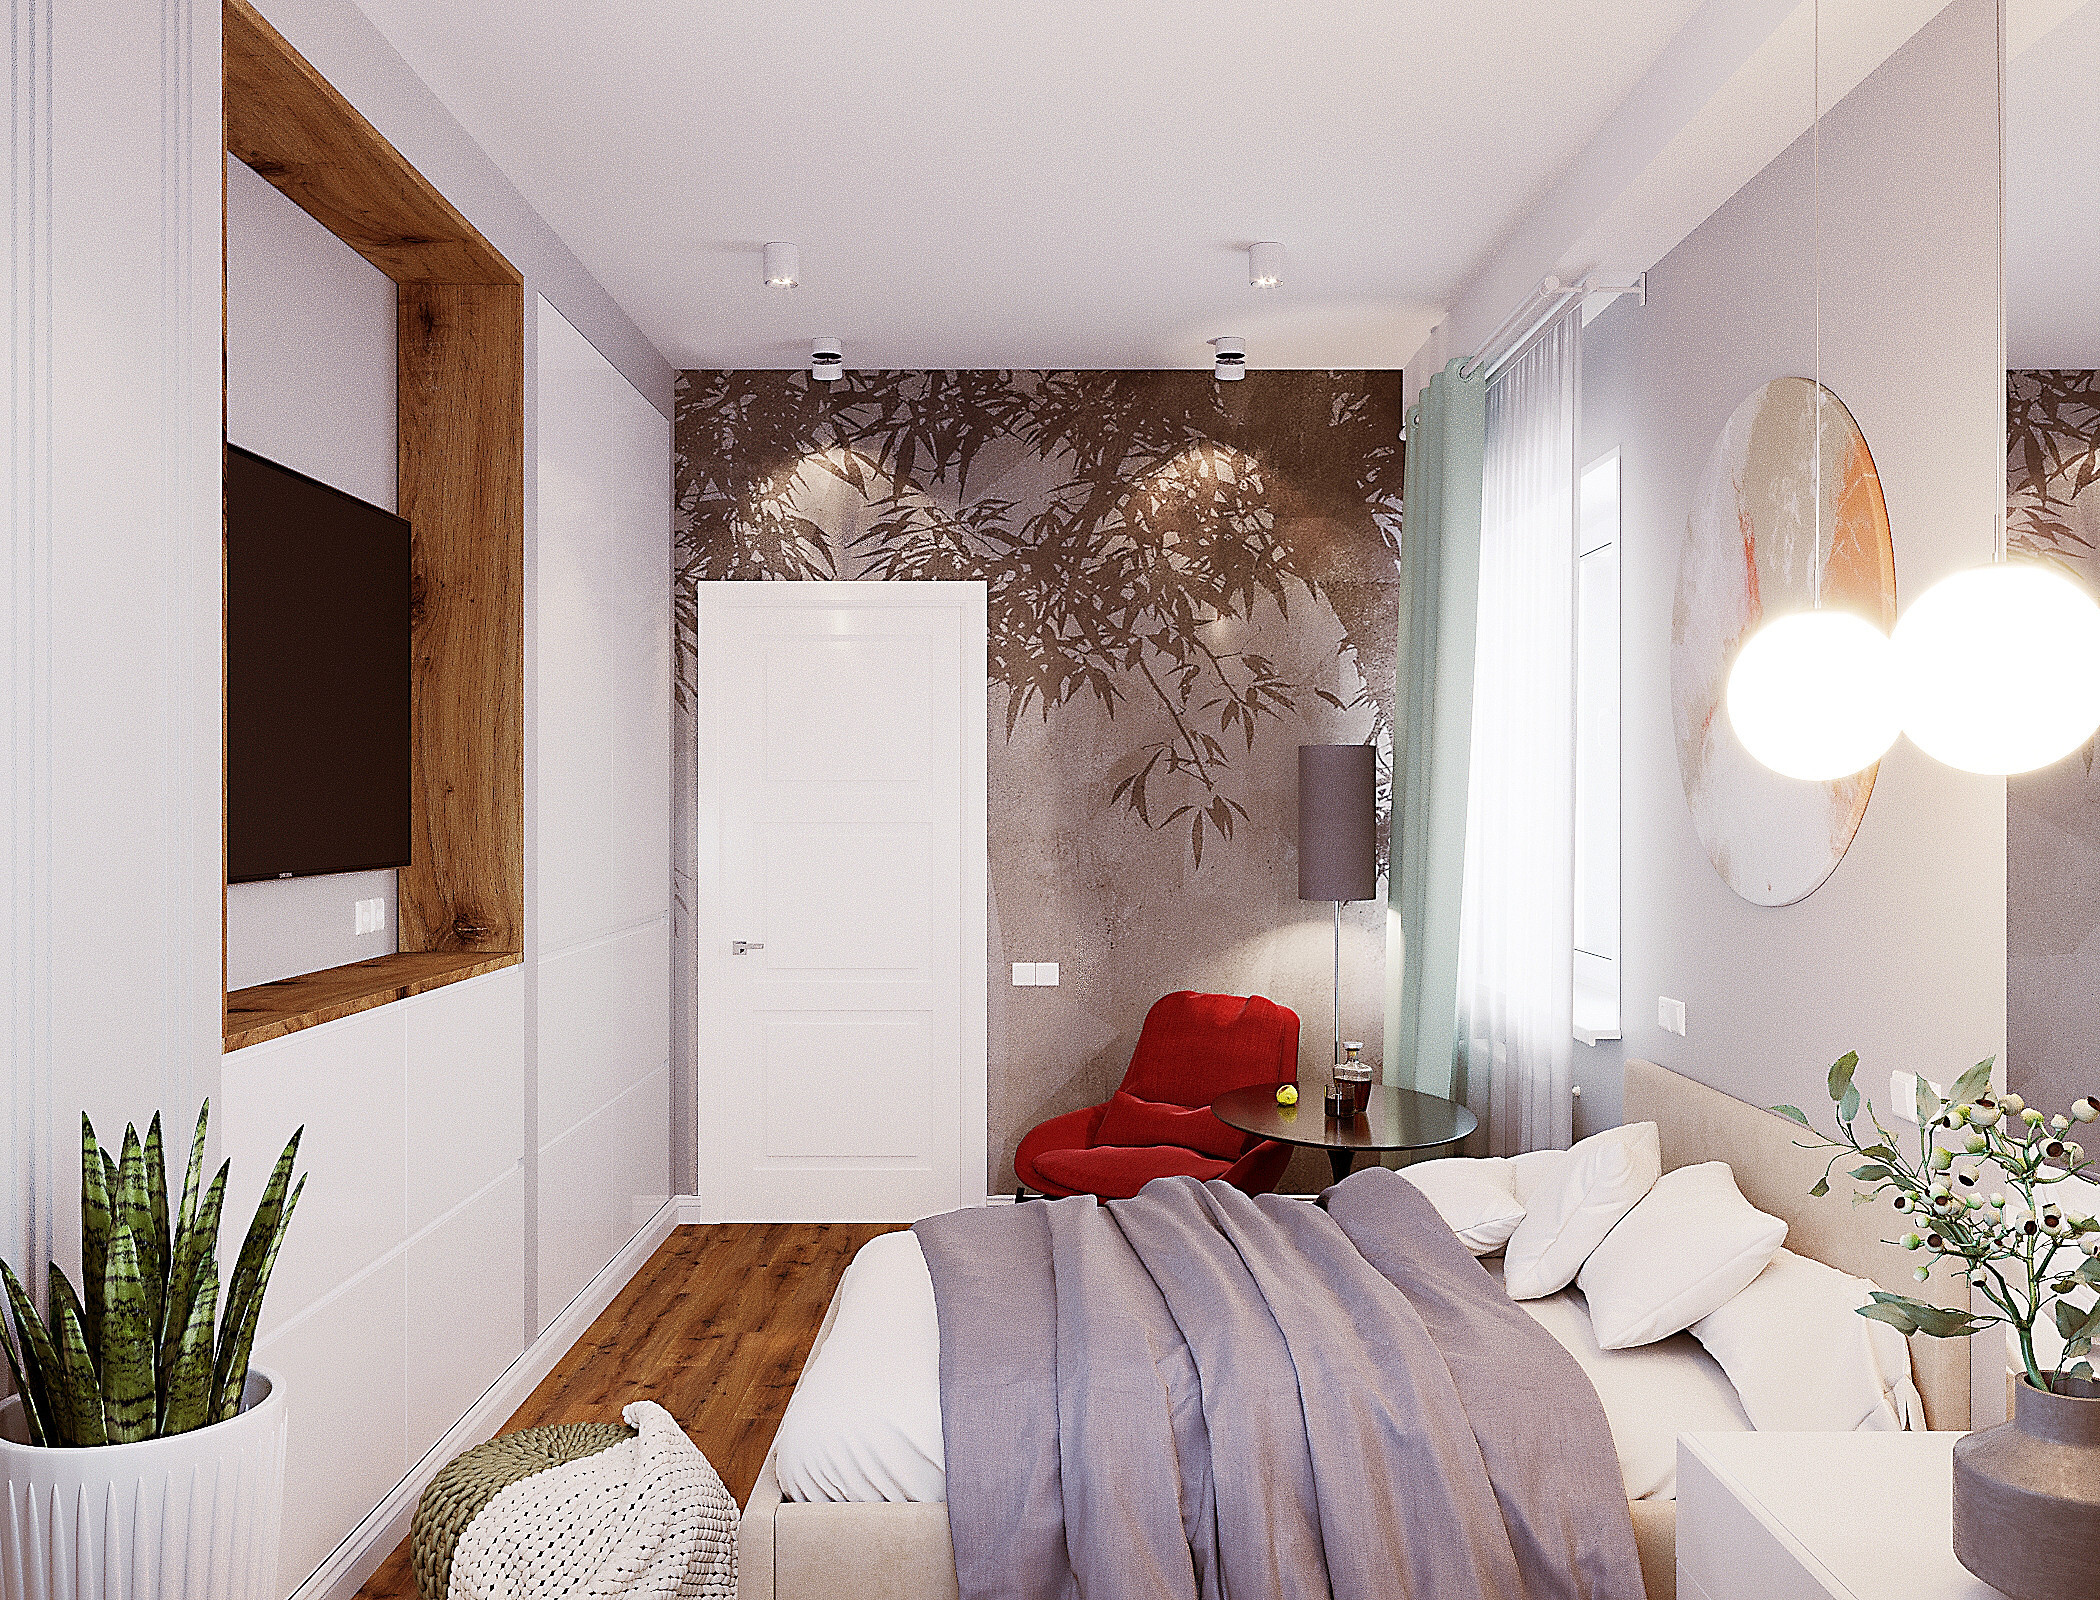 Интерьер спальни с зонированием, проходной, кроватью у двери и светильниками над кроватью в стиле лофт и эко